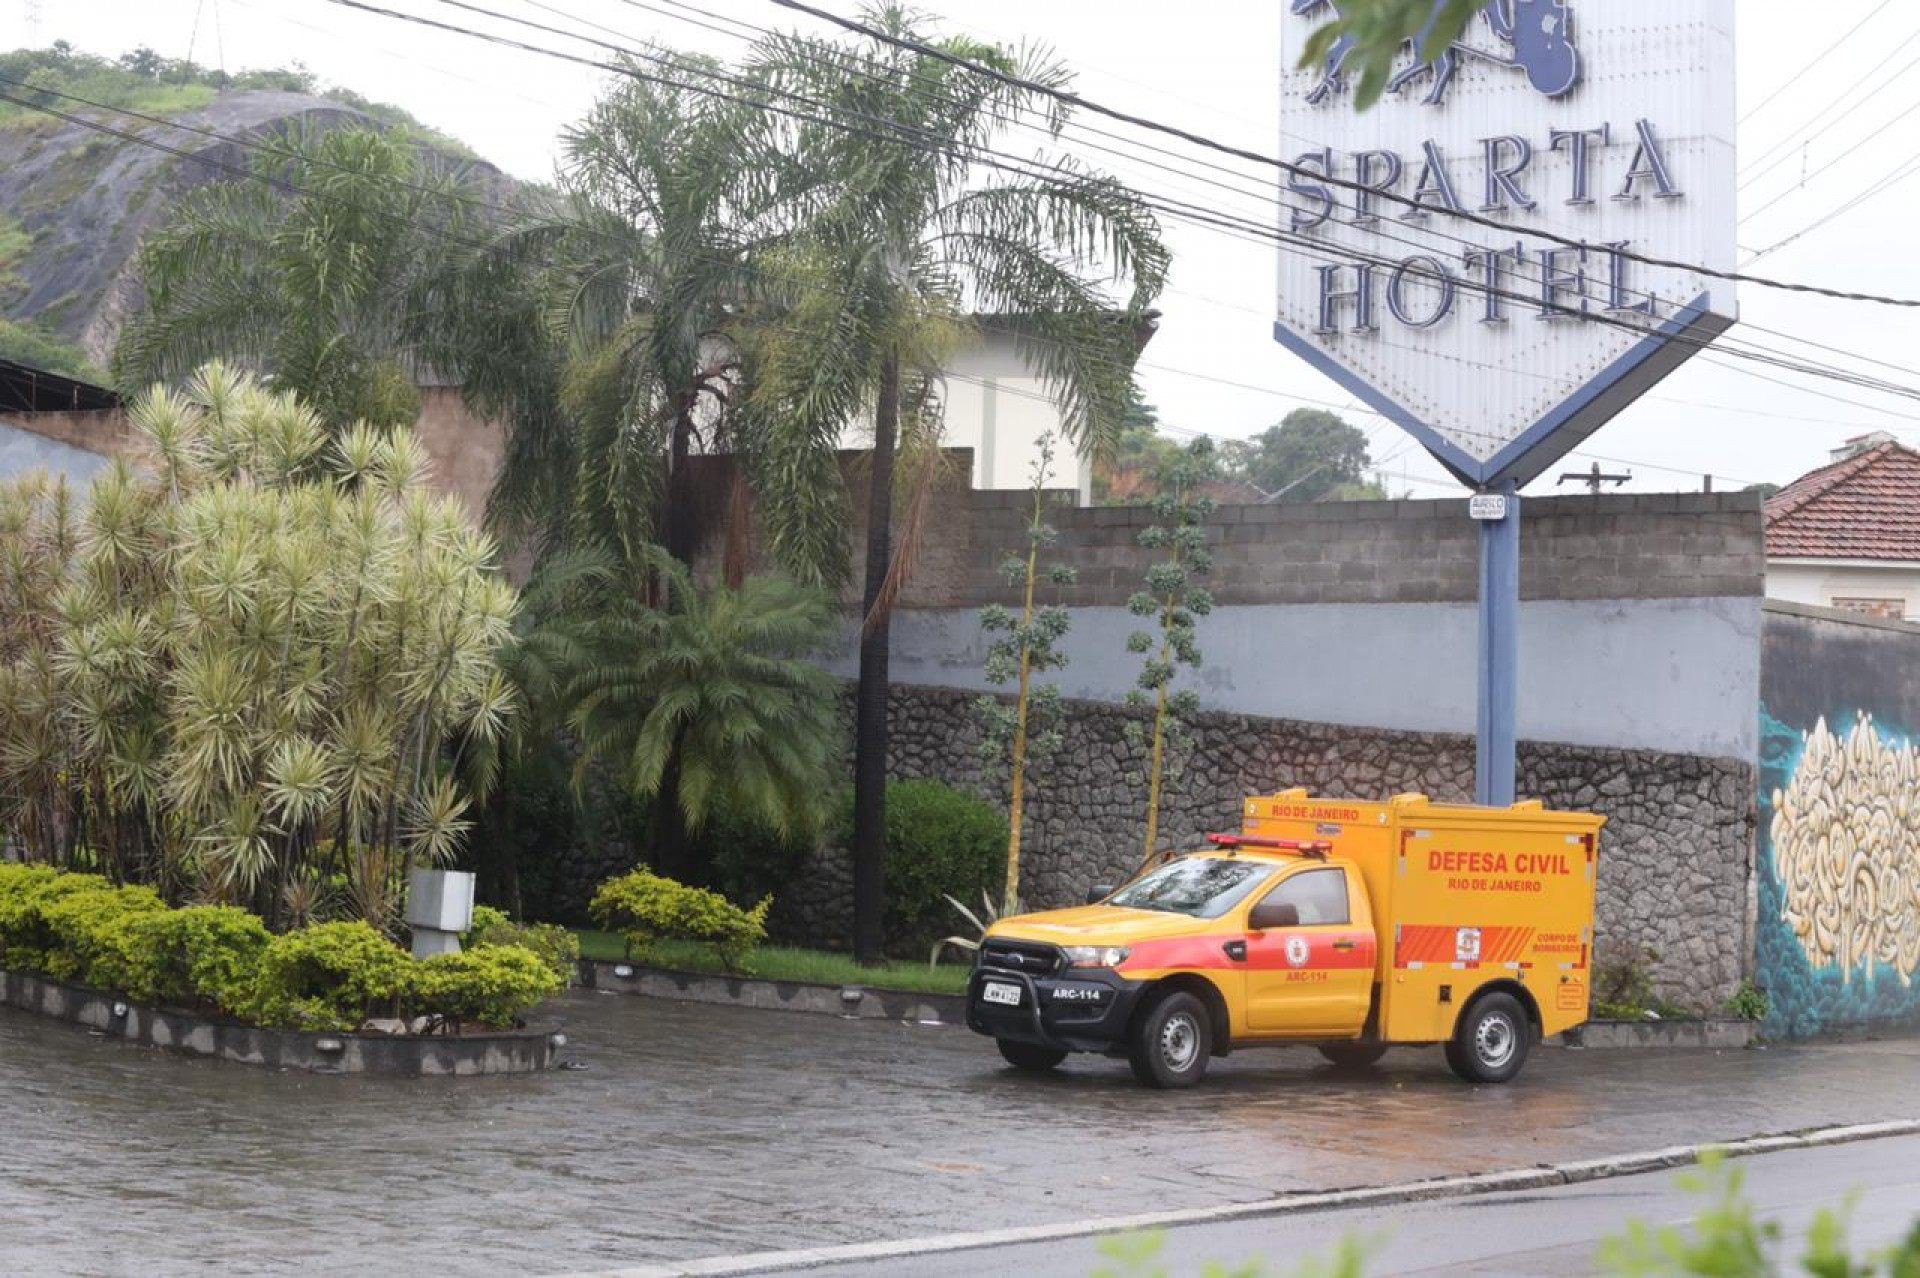 Homem é morto na entrada de motel perto de batalhão da PM em Niterói